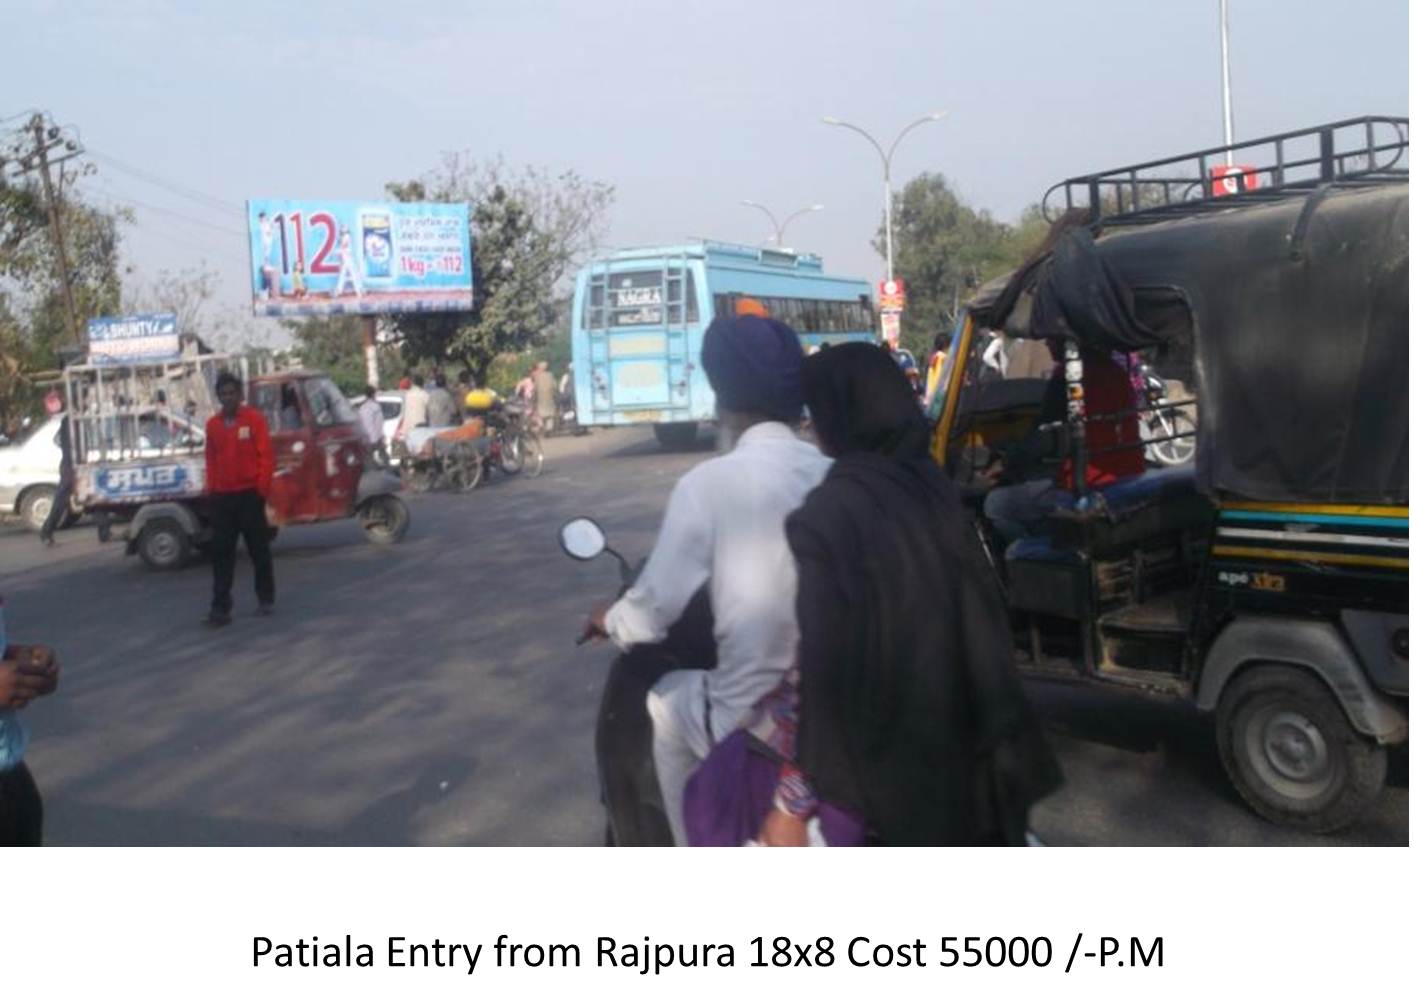 Entry from Rajpura, Patiala